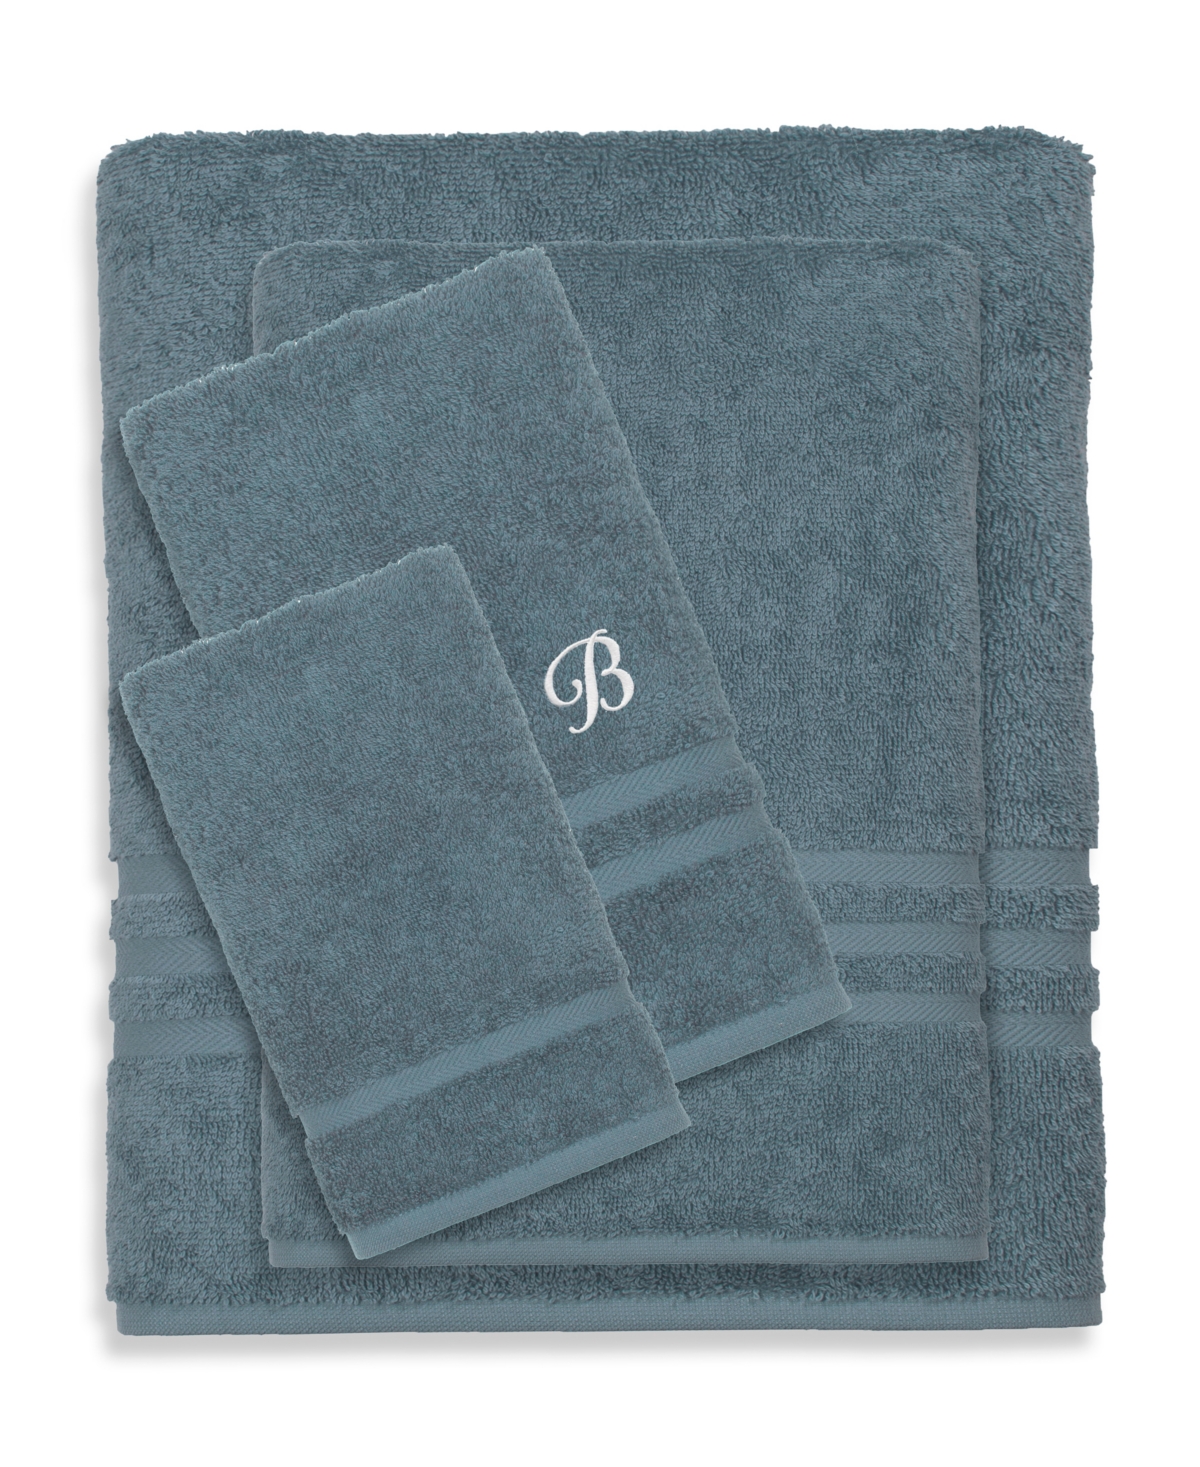 Linum Home Textiles Turkish Cotton Personalized Denzi Towel Set, 4 Piece In Blue